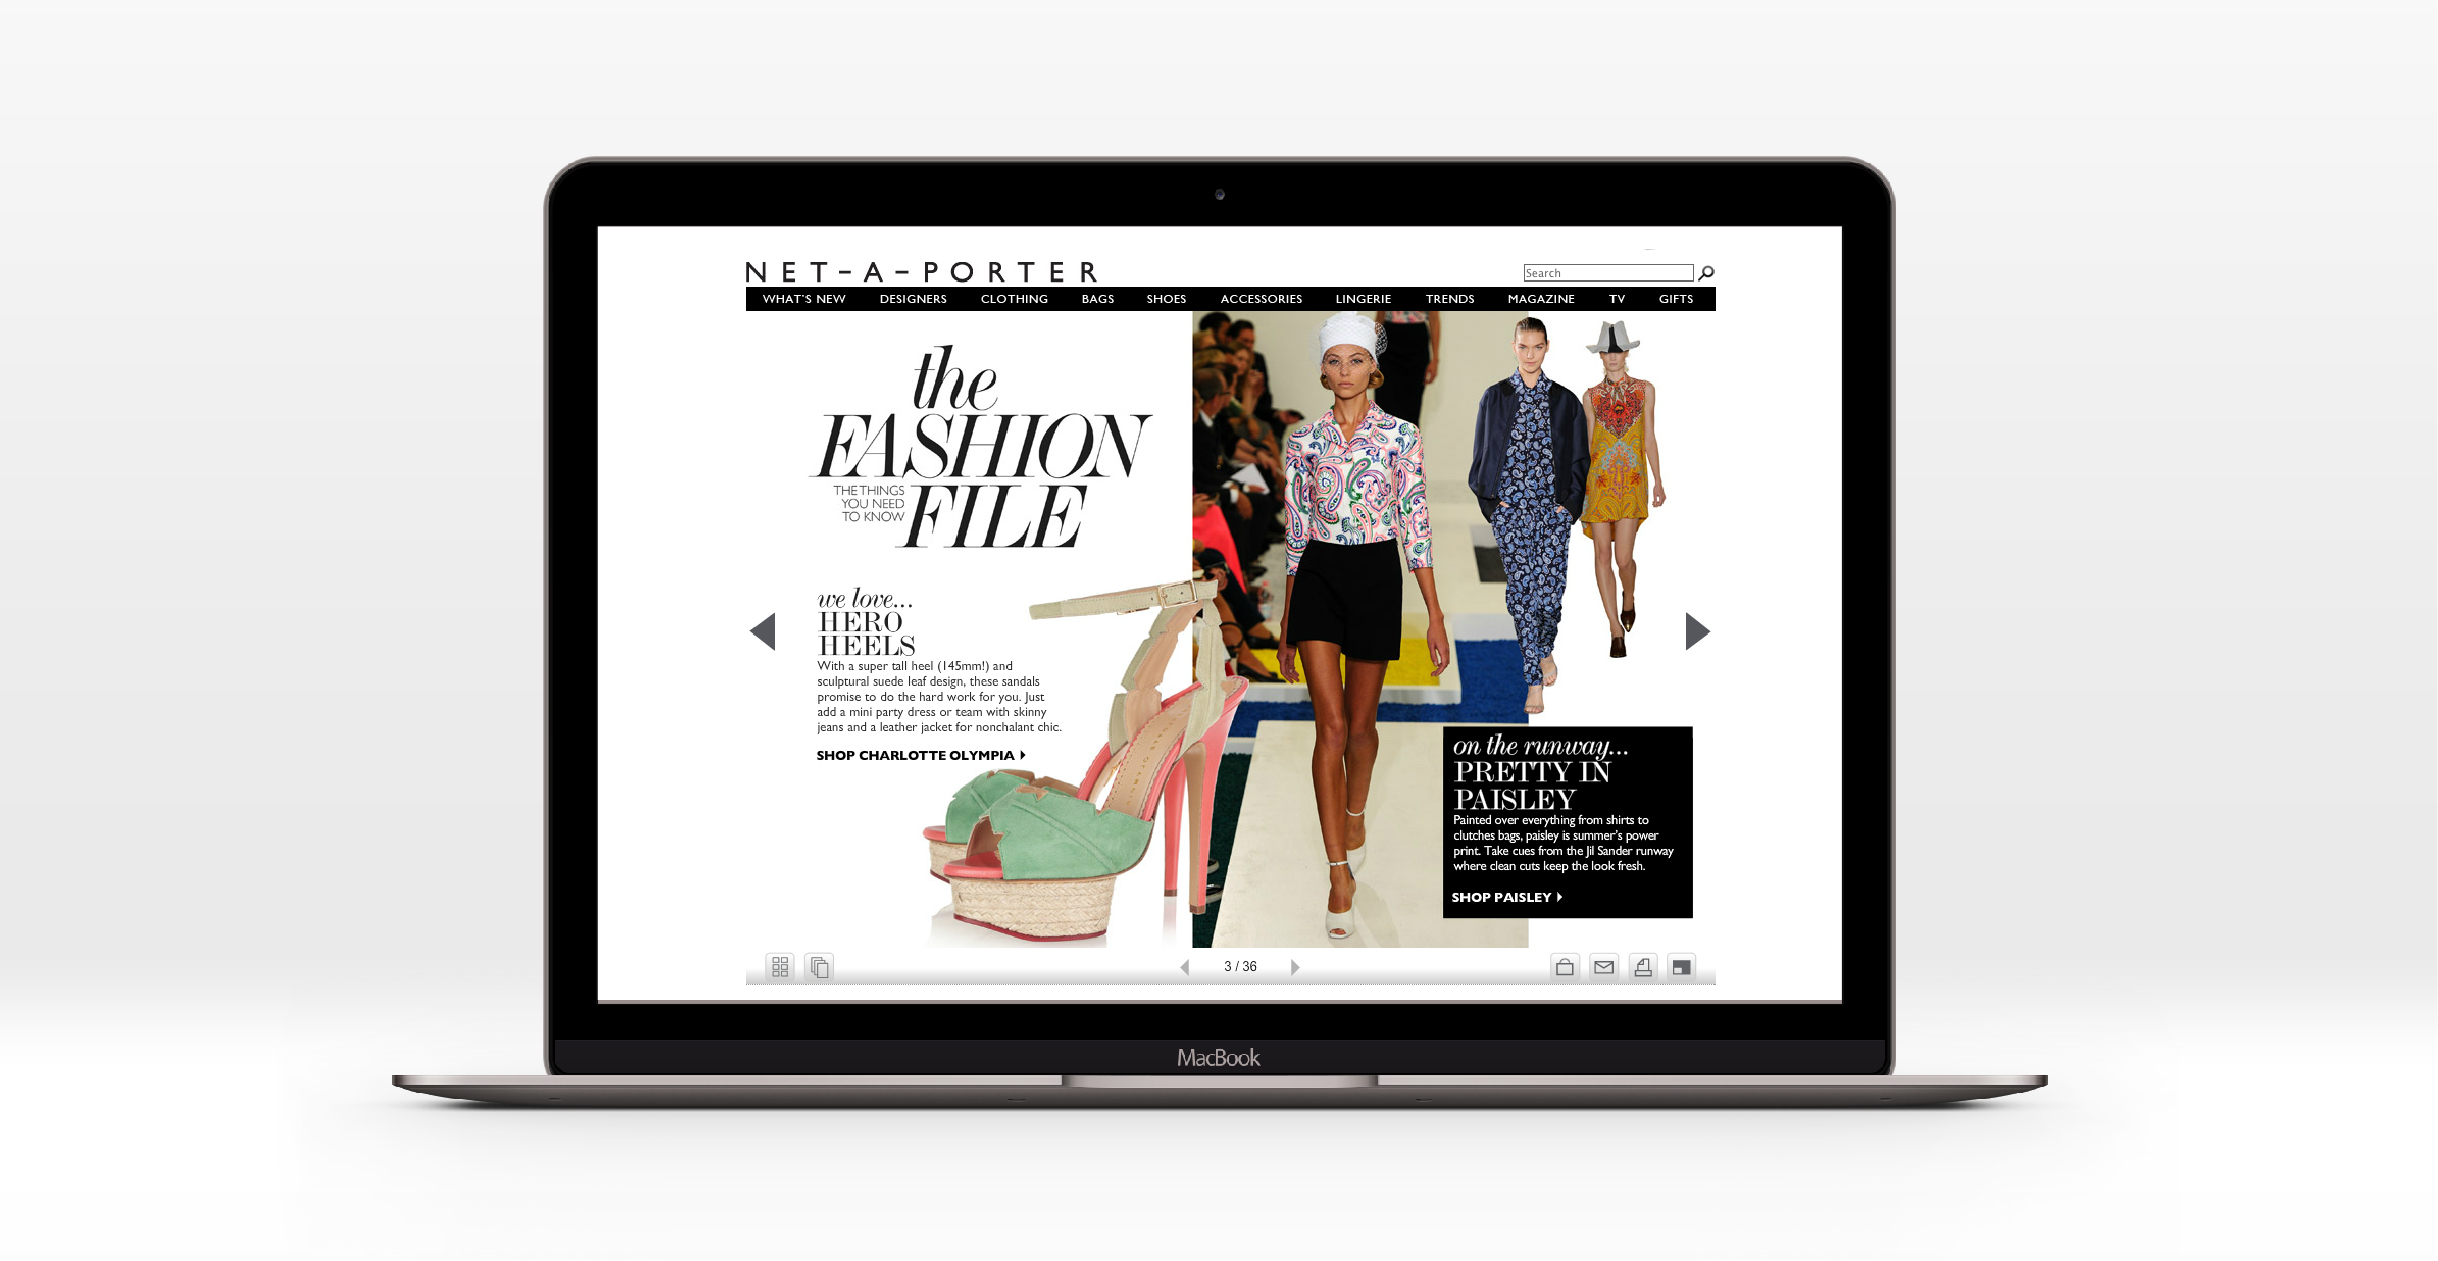 Online magazine design for Net-A-Porter